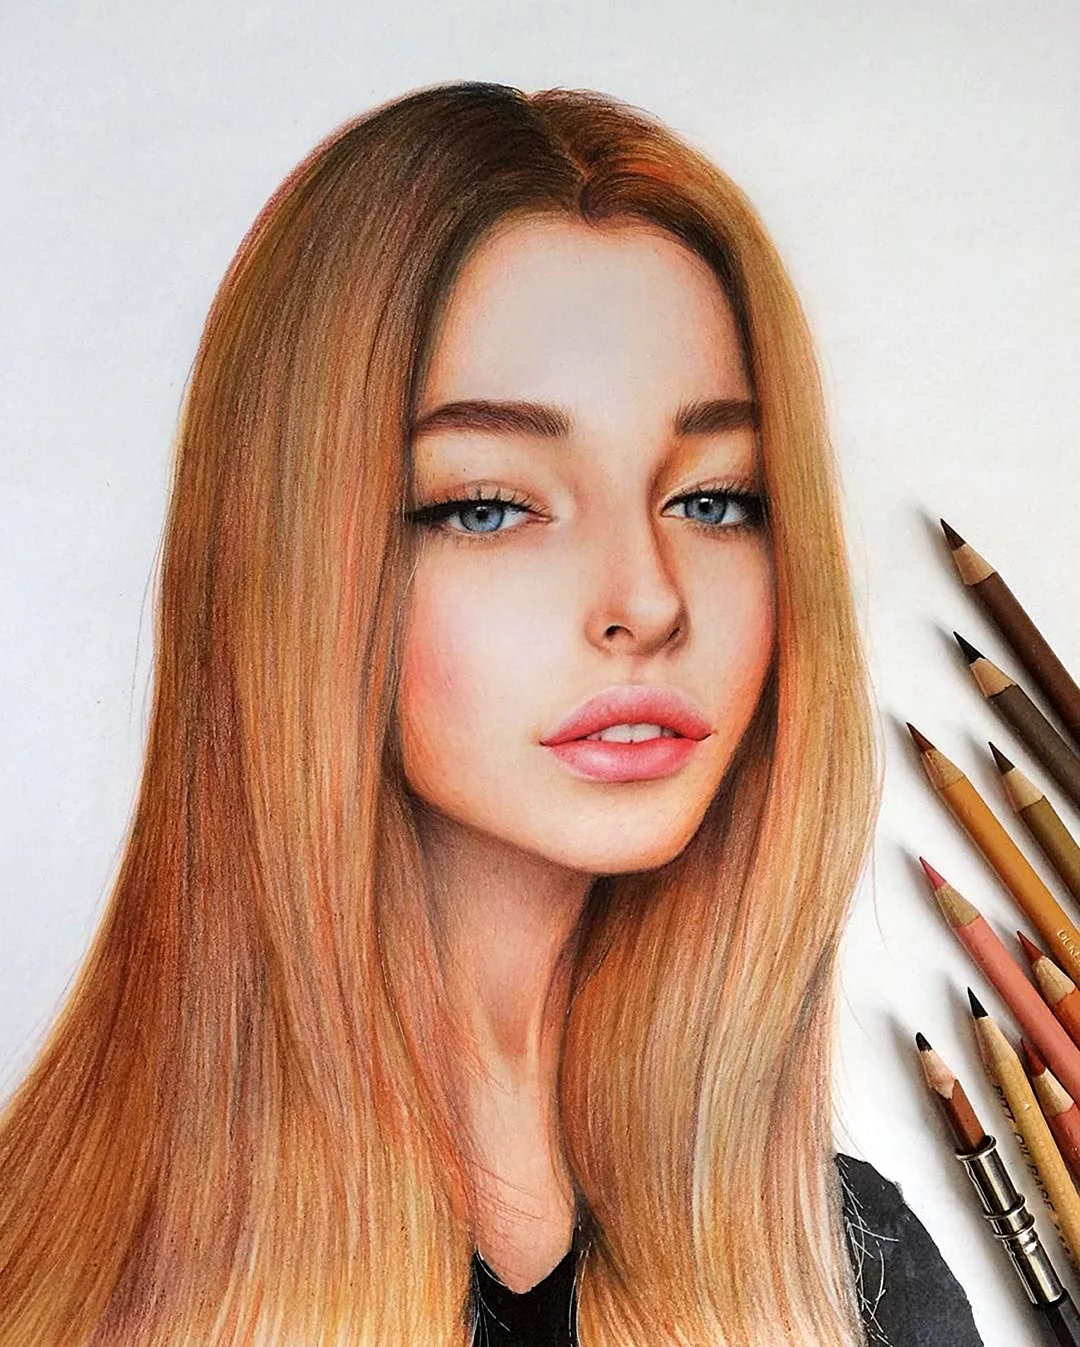 Портрет девушки цветными карандашами. Для срисовки